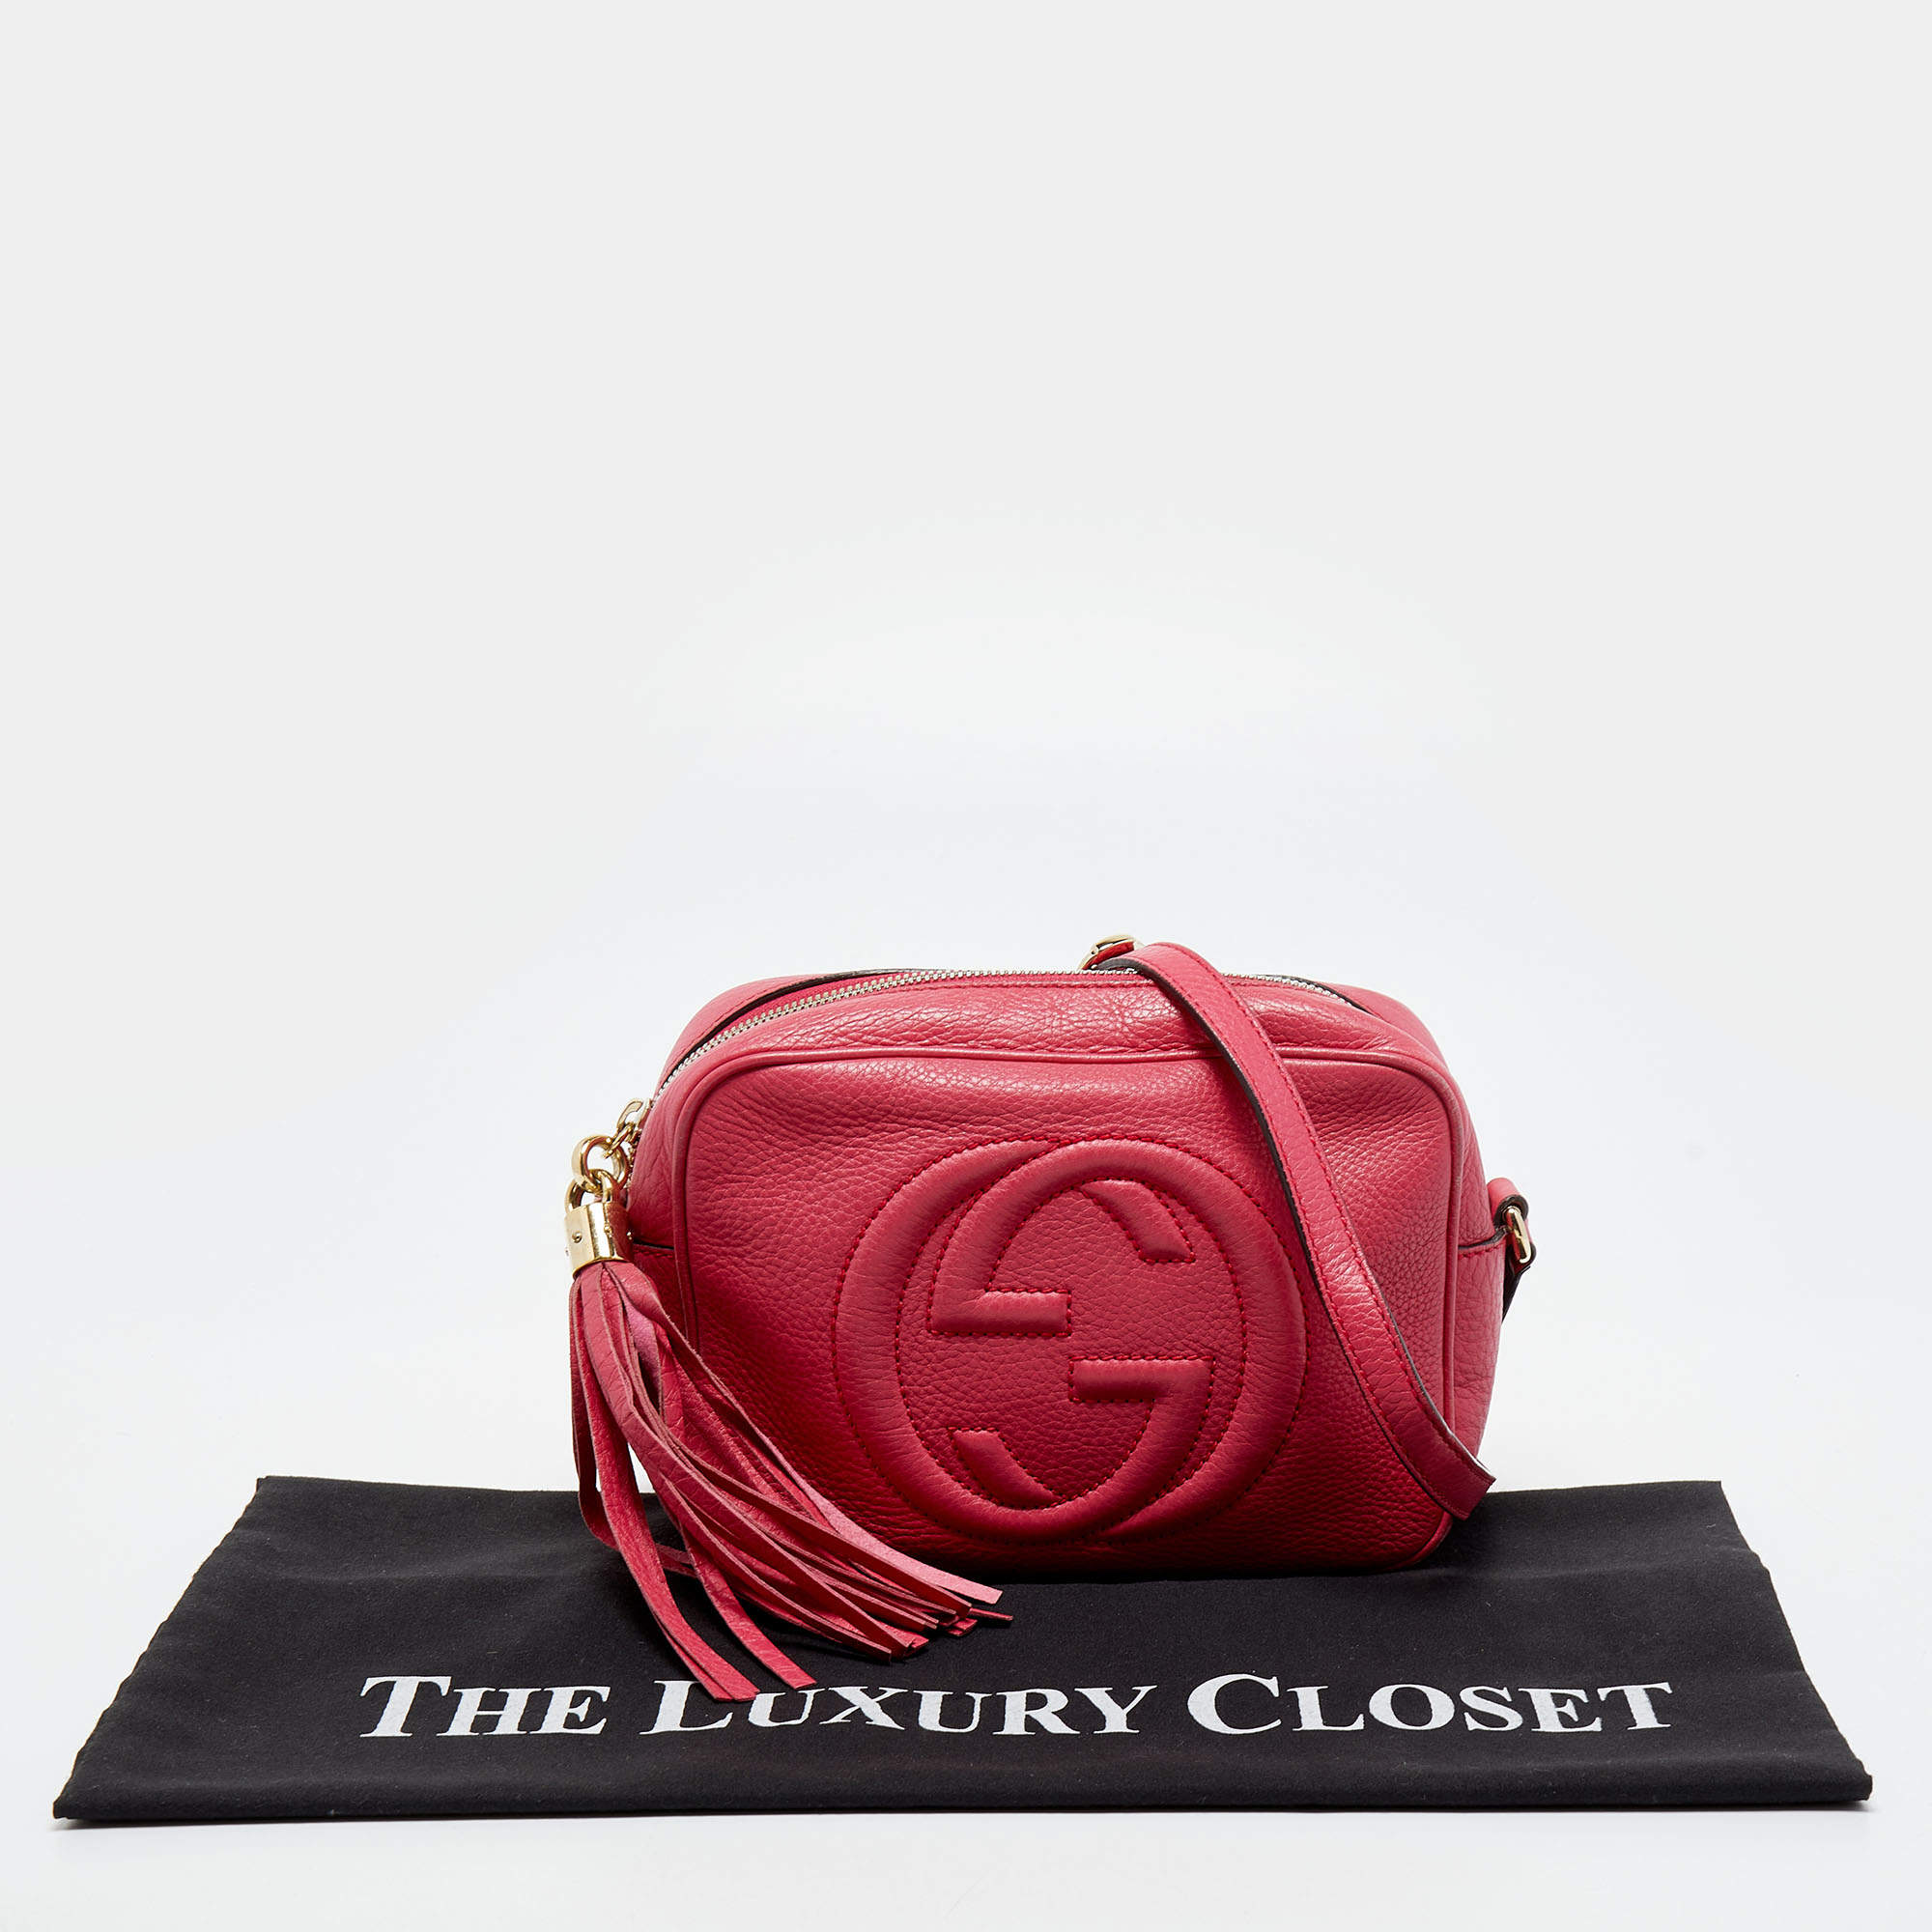 Gucci Soho Disco Shoulder Bag Leather Pink G6132